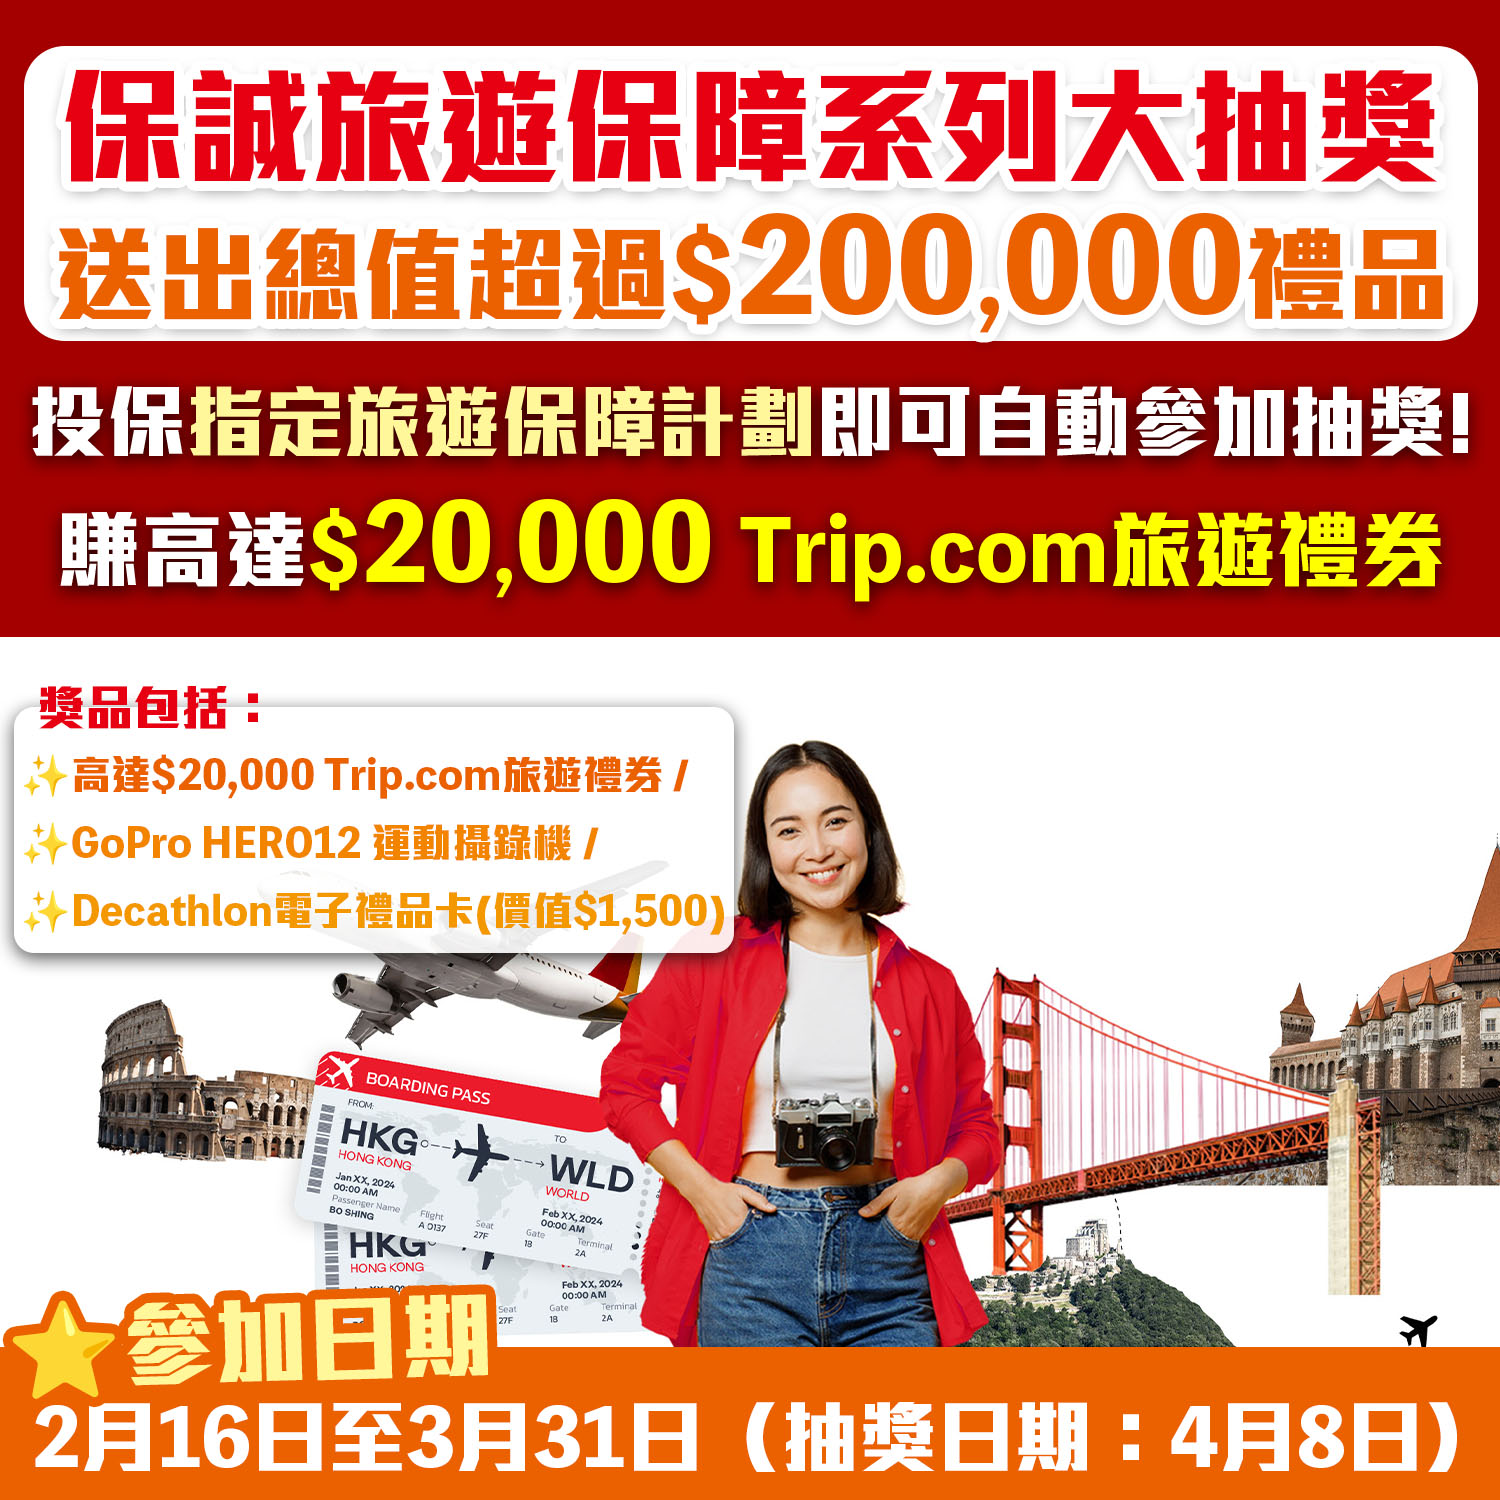 【Prudential Hong Kong 保誠保險旅遊保障系列《無限制Chill住飛》大抽獎】送出總值超過 $200,000禮品！最高贏高達$20,000 Trip .com 旅遊禮券！